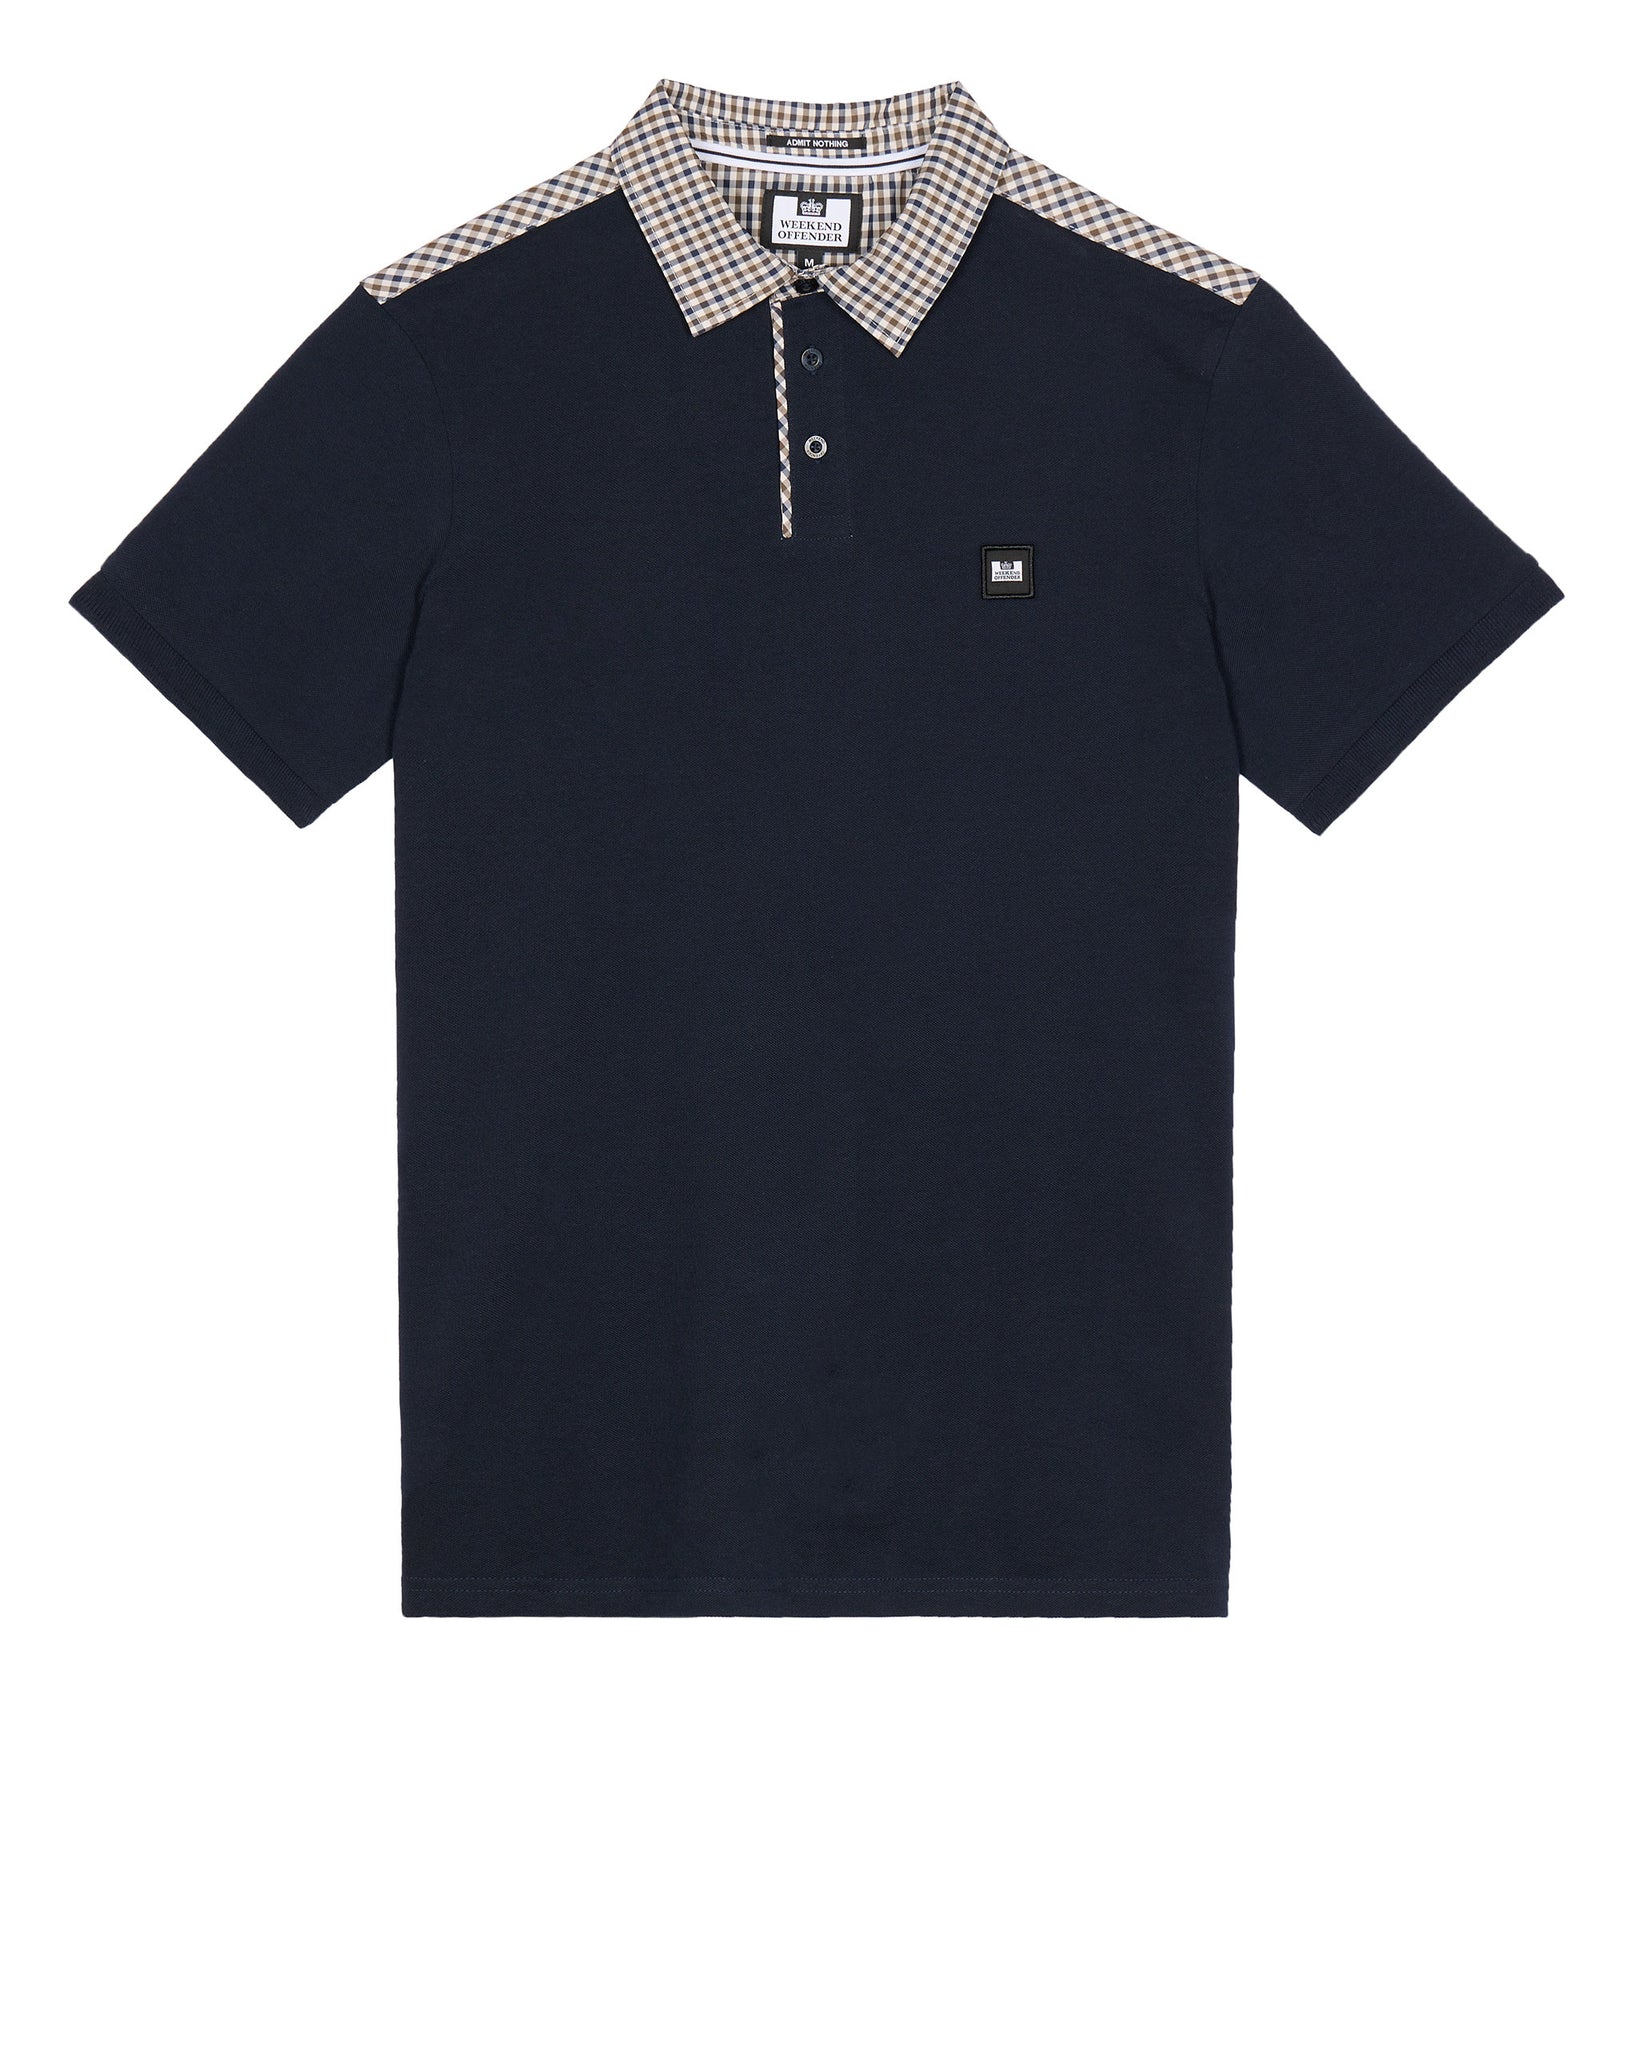 Costa Polo Shirt Navy/House Check